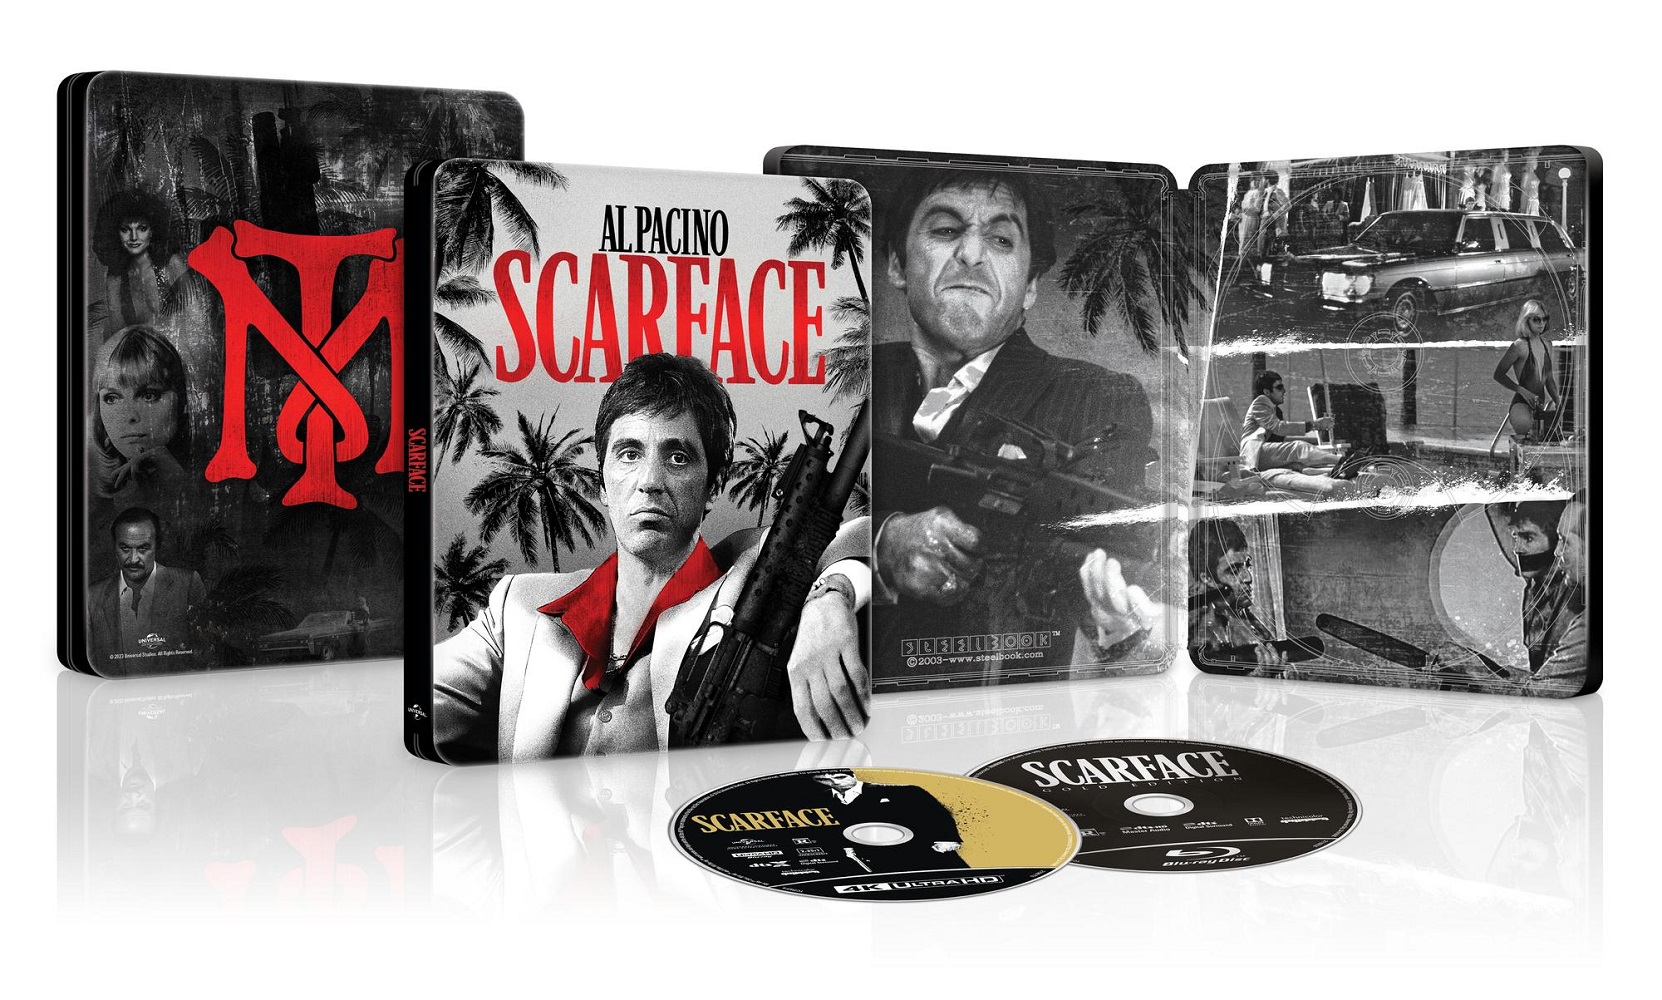 Scarface [SteelBook] [4k Ultra HD Blu-ray/Blu-ray] - Best Buy